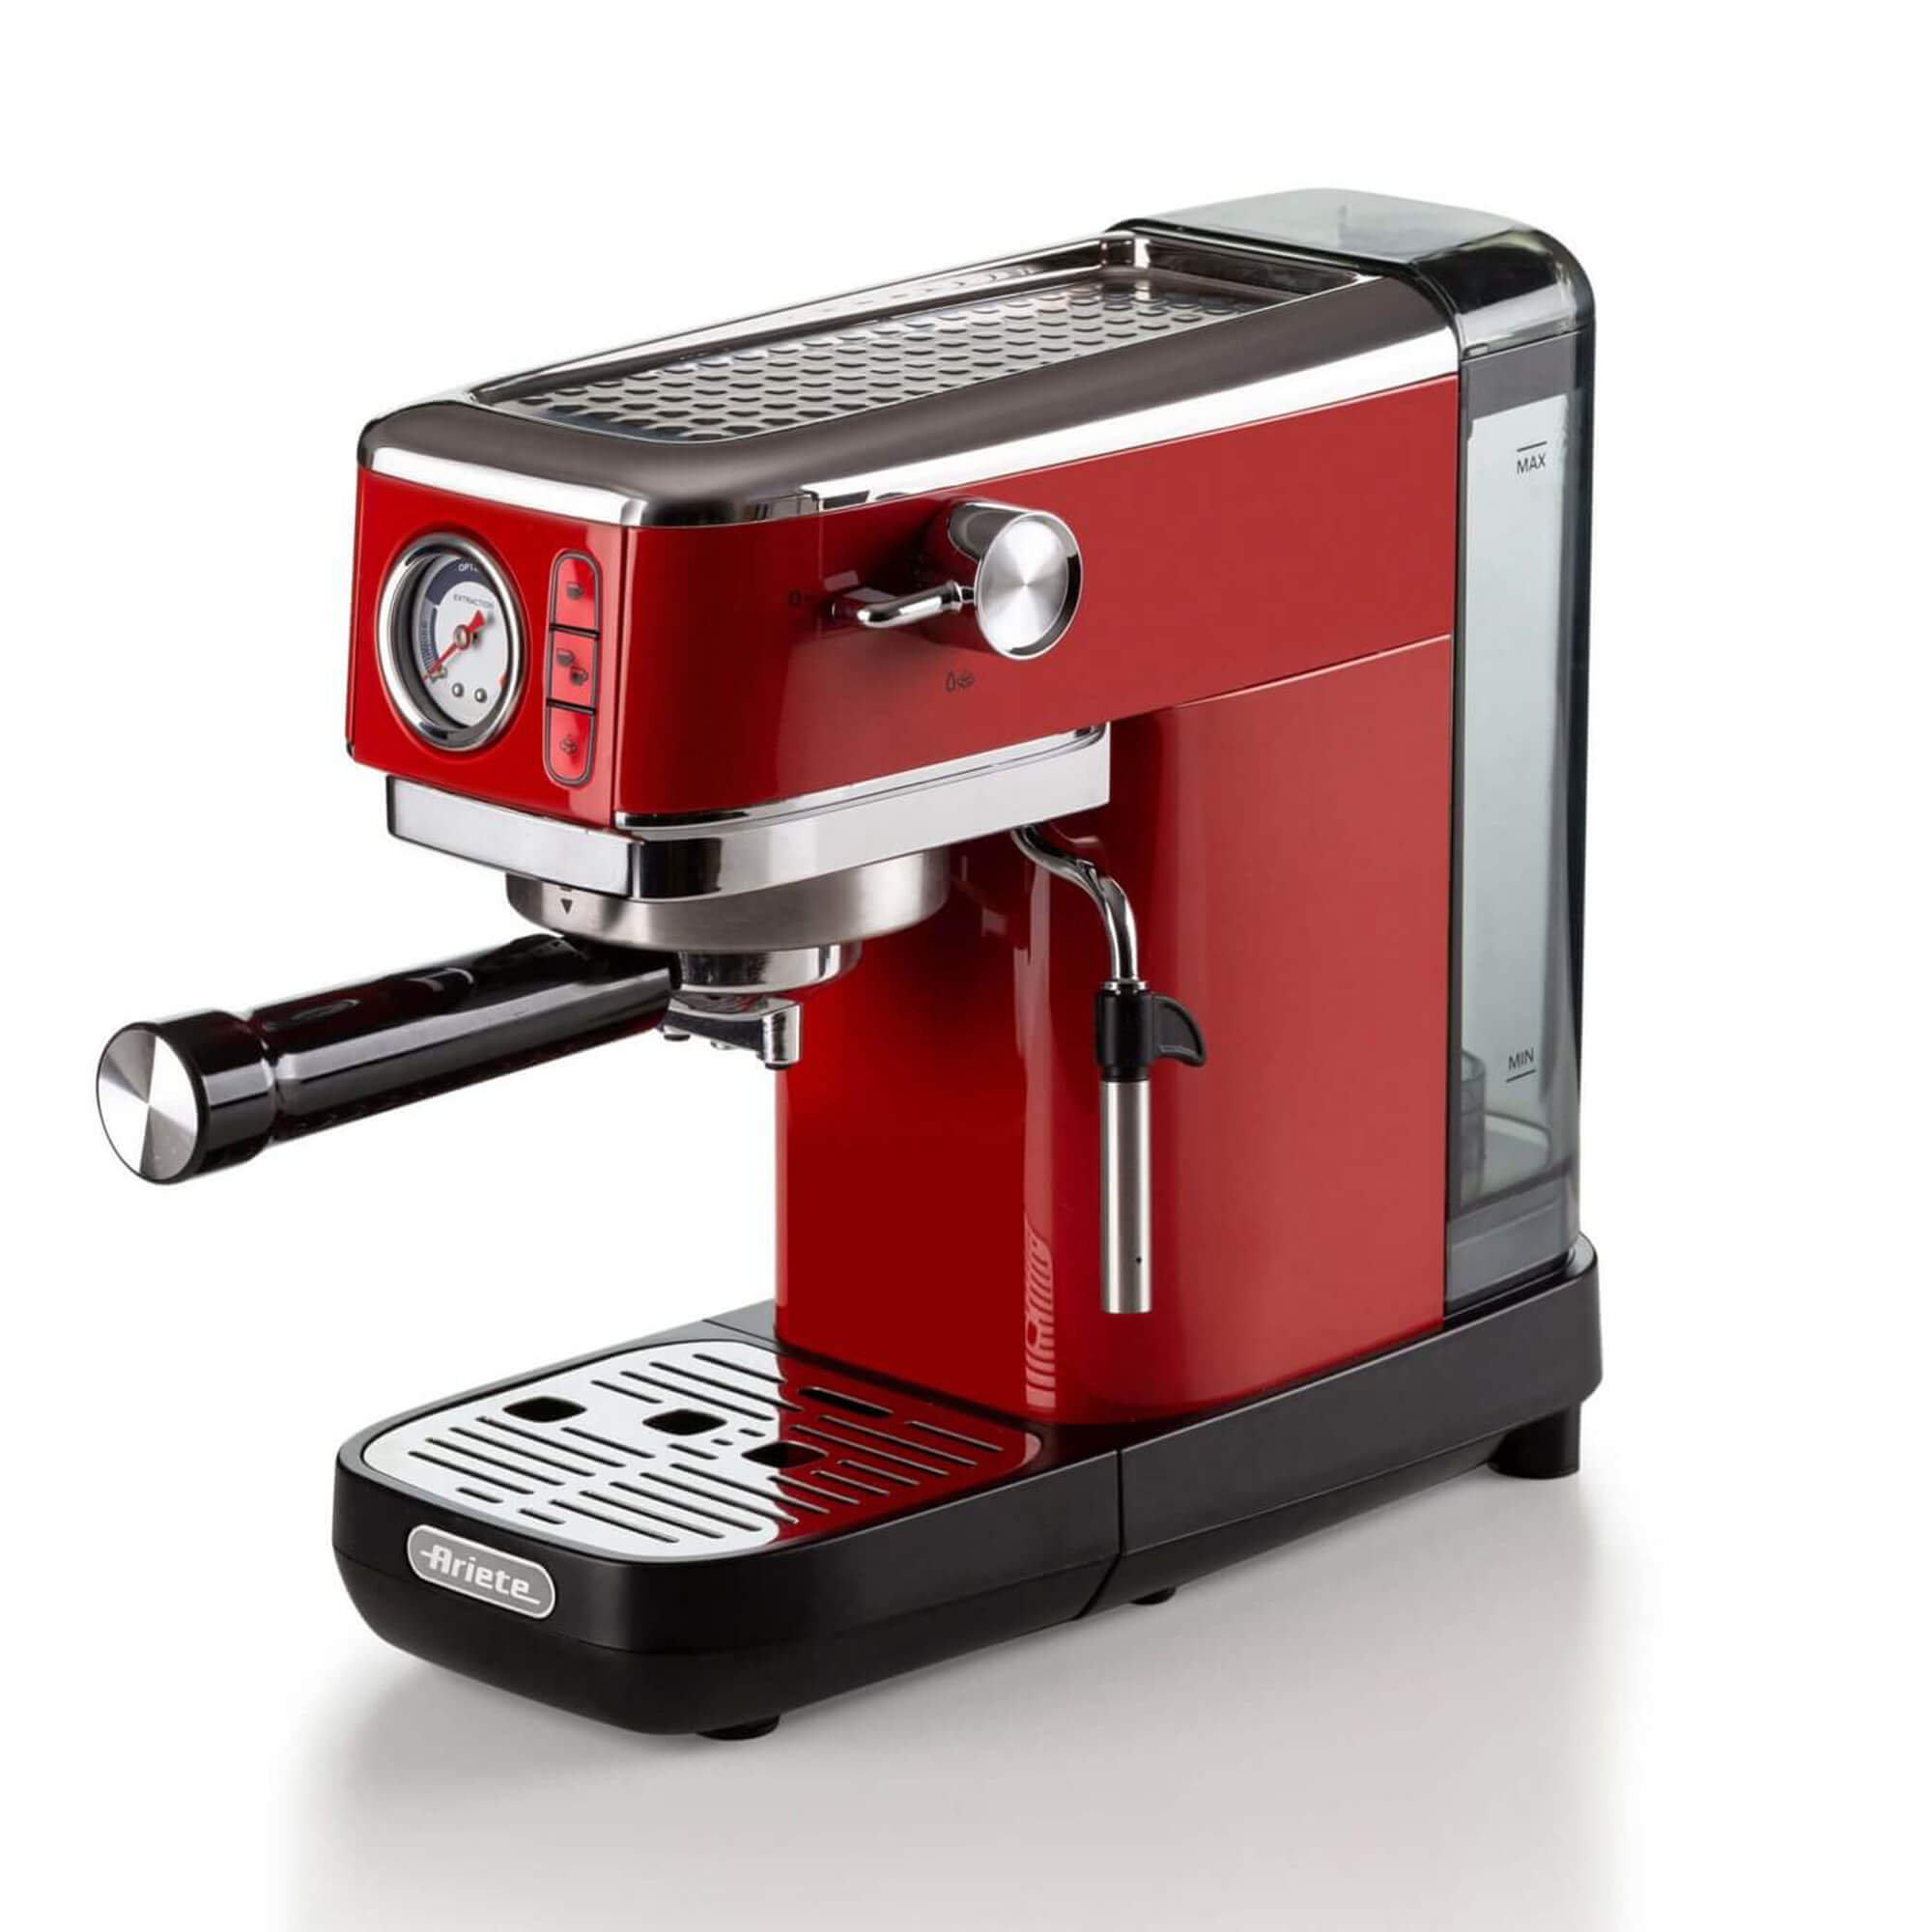 Ariette Espresso Maker 1300W Red